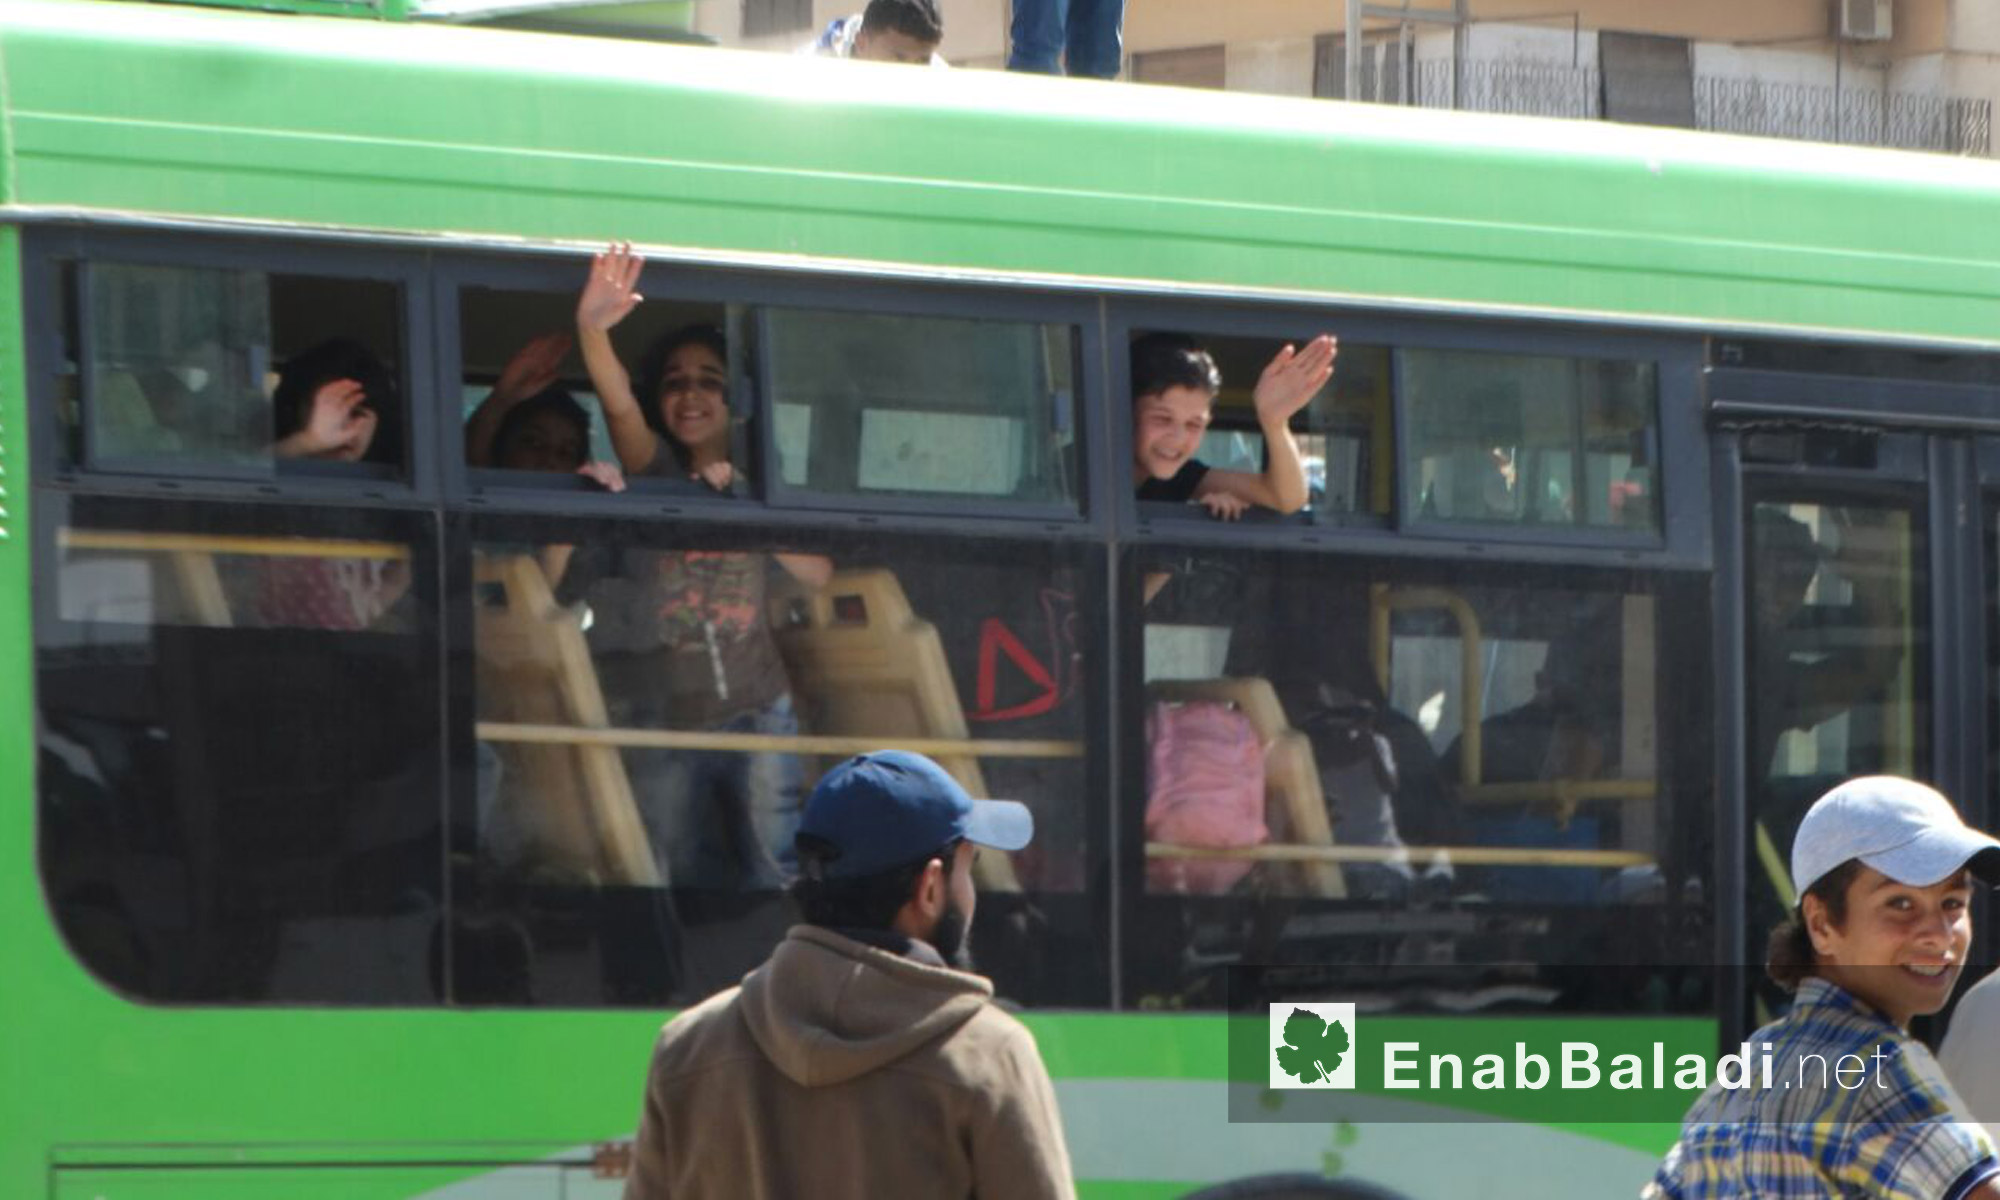 أطفال وعائلات الوعر يودعون أهالي الحي قبل خروجهم إلى ريف حمص الشمالي - الخميس 23 أيلول (عنب بلدي)